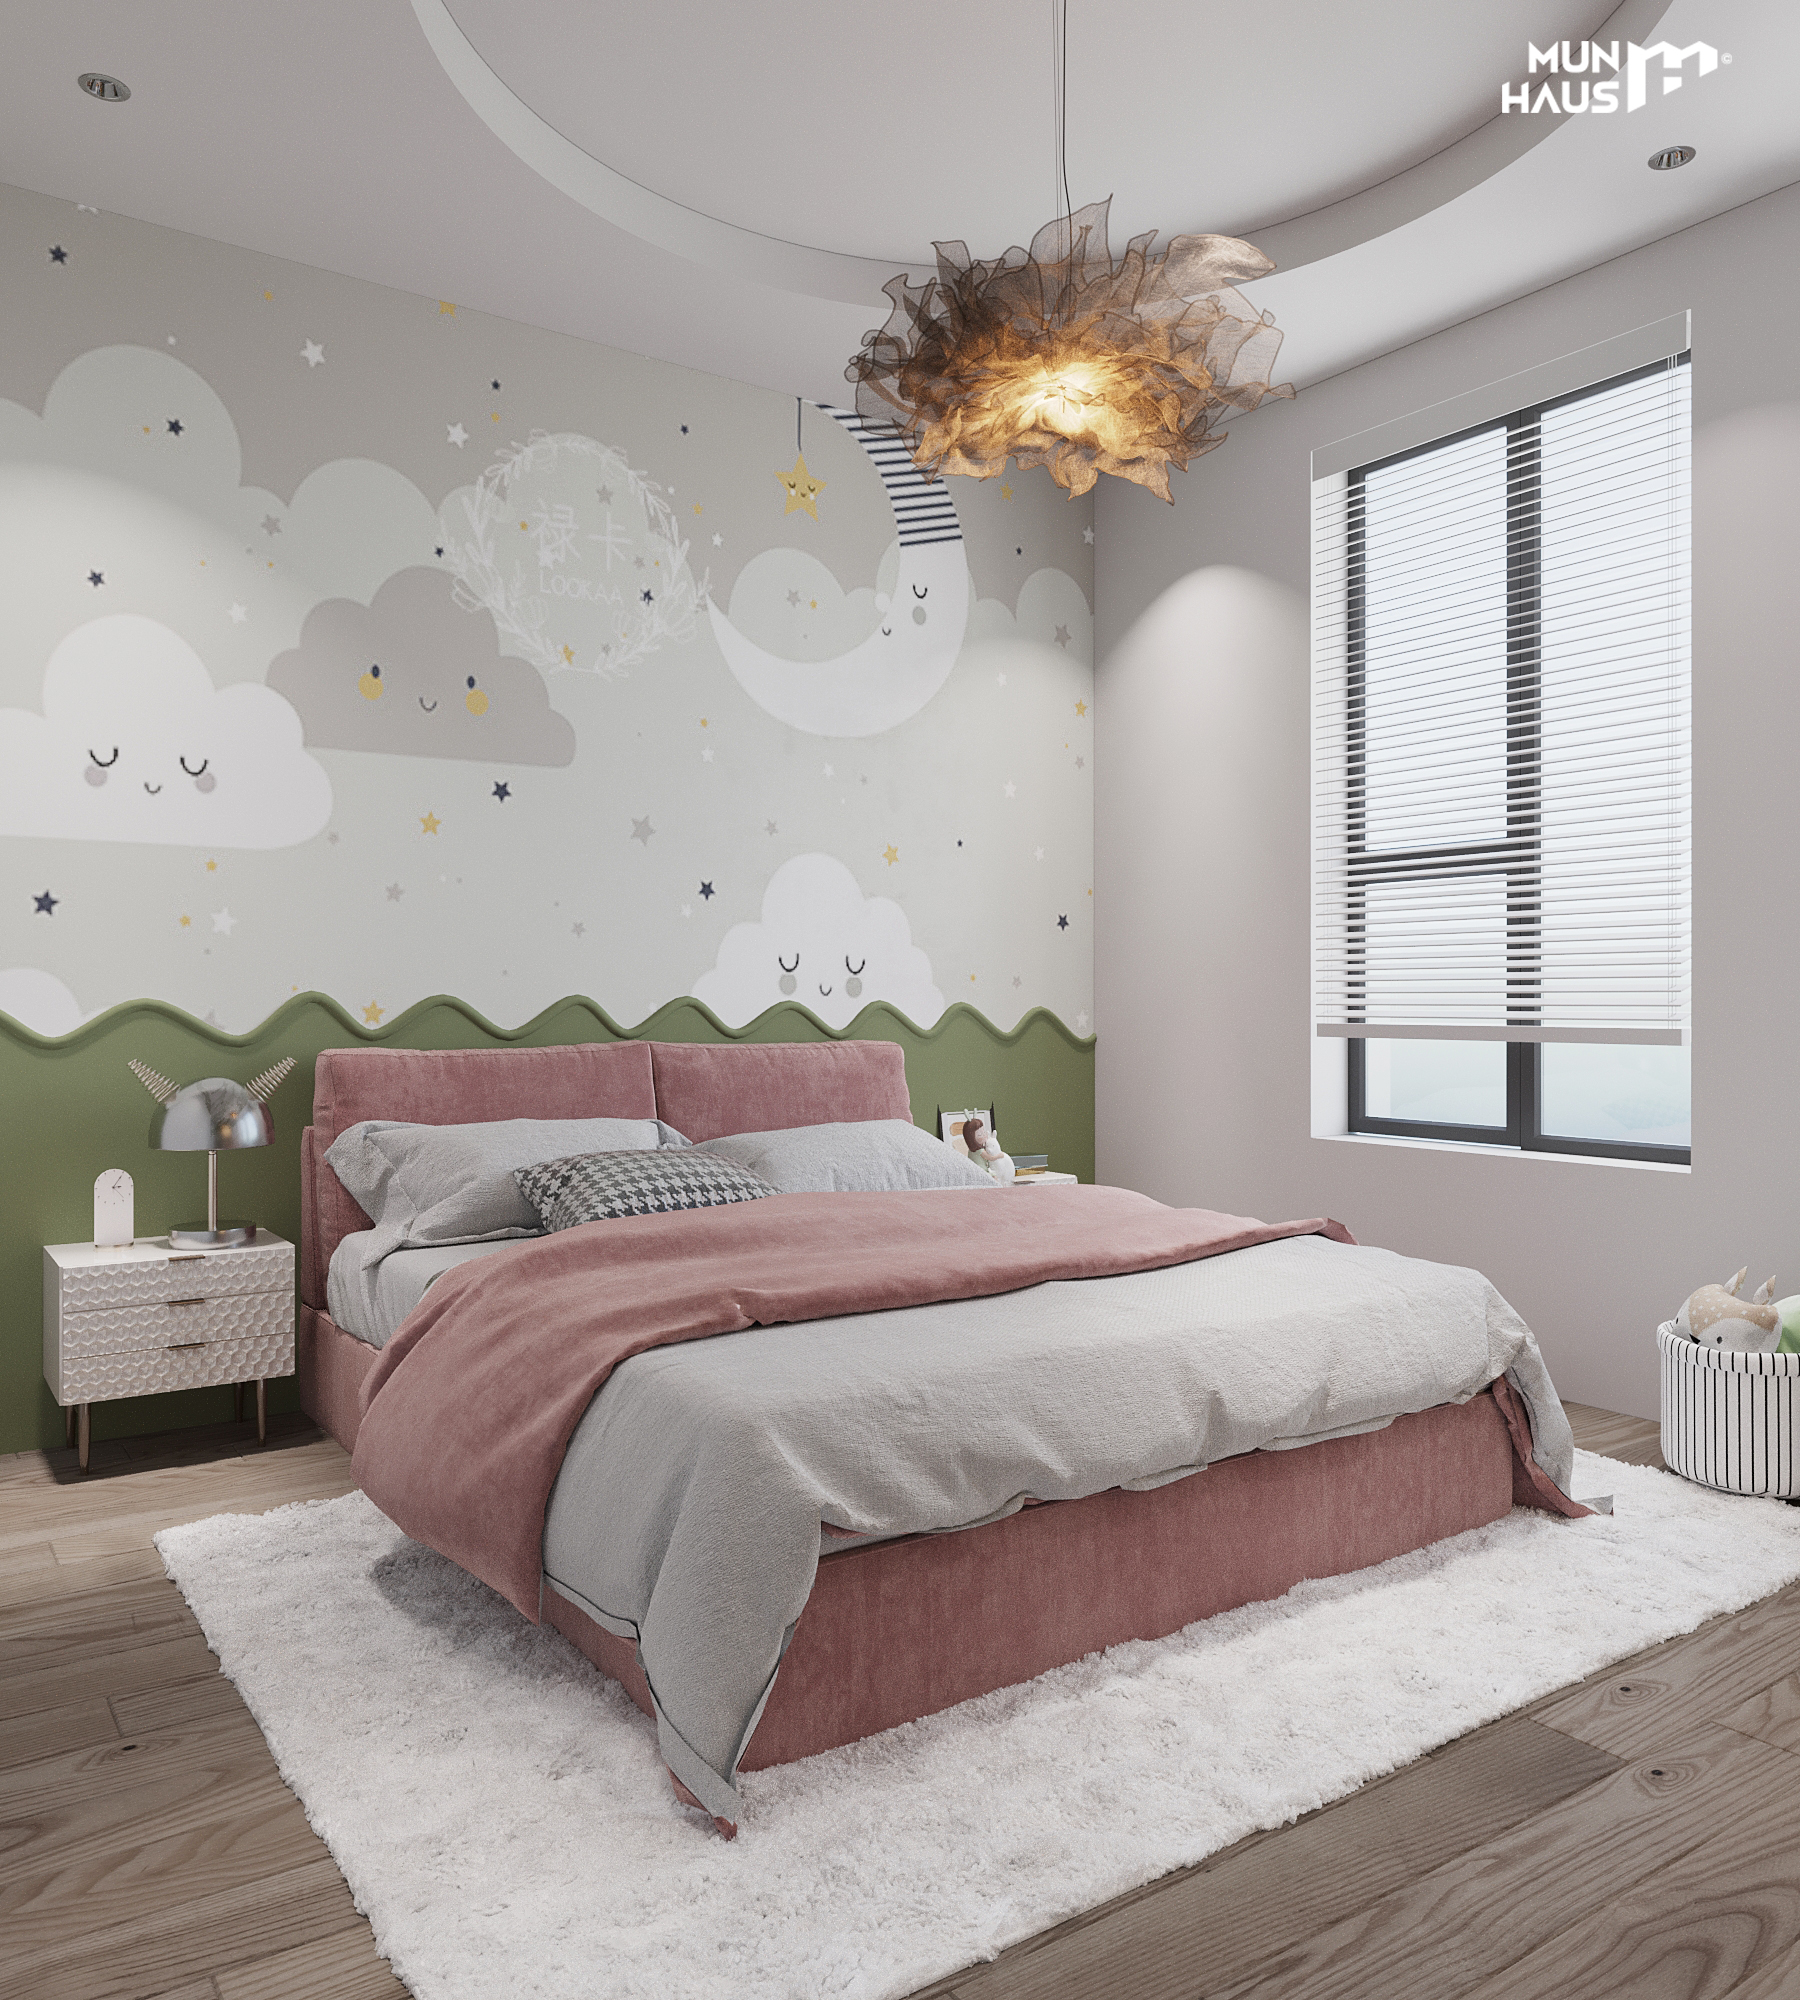 Thiết kế phòng ngủ với màu sắc tươi sáng bắt mắt